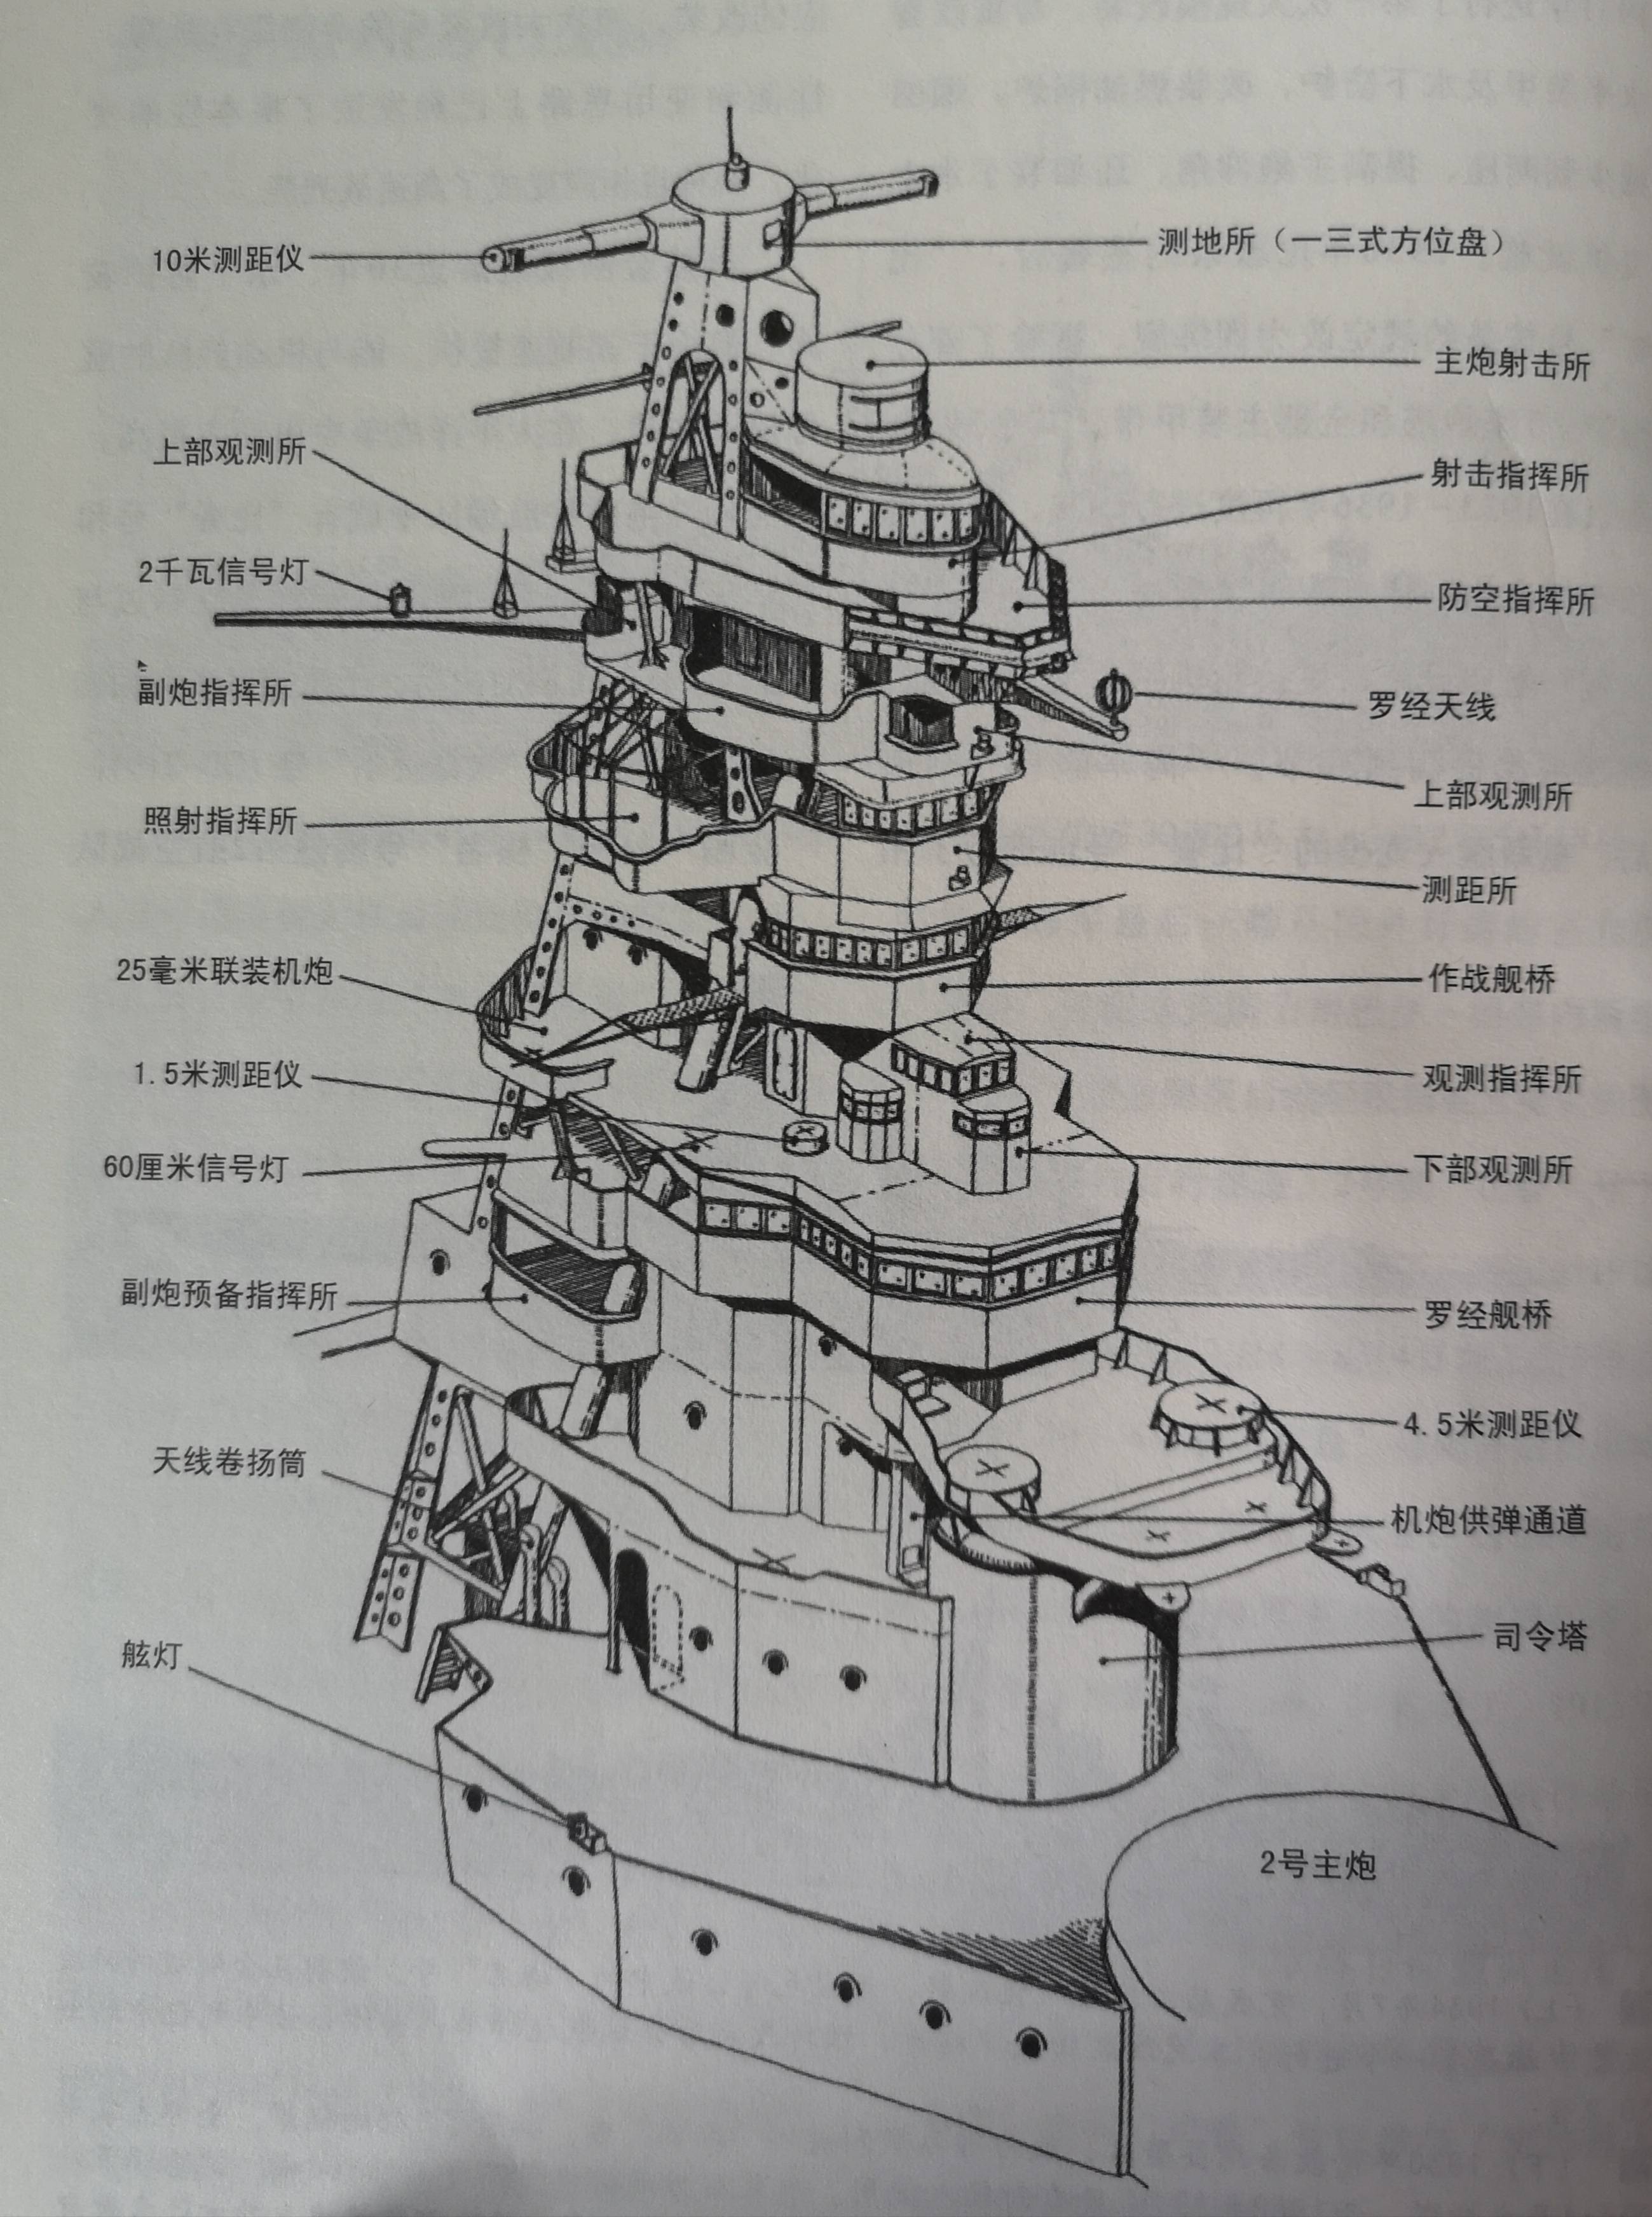 二战日本最繁忙的战列舰——金刚级战列舰微解析